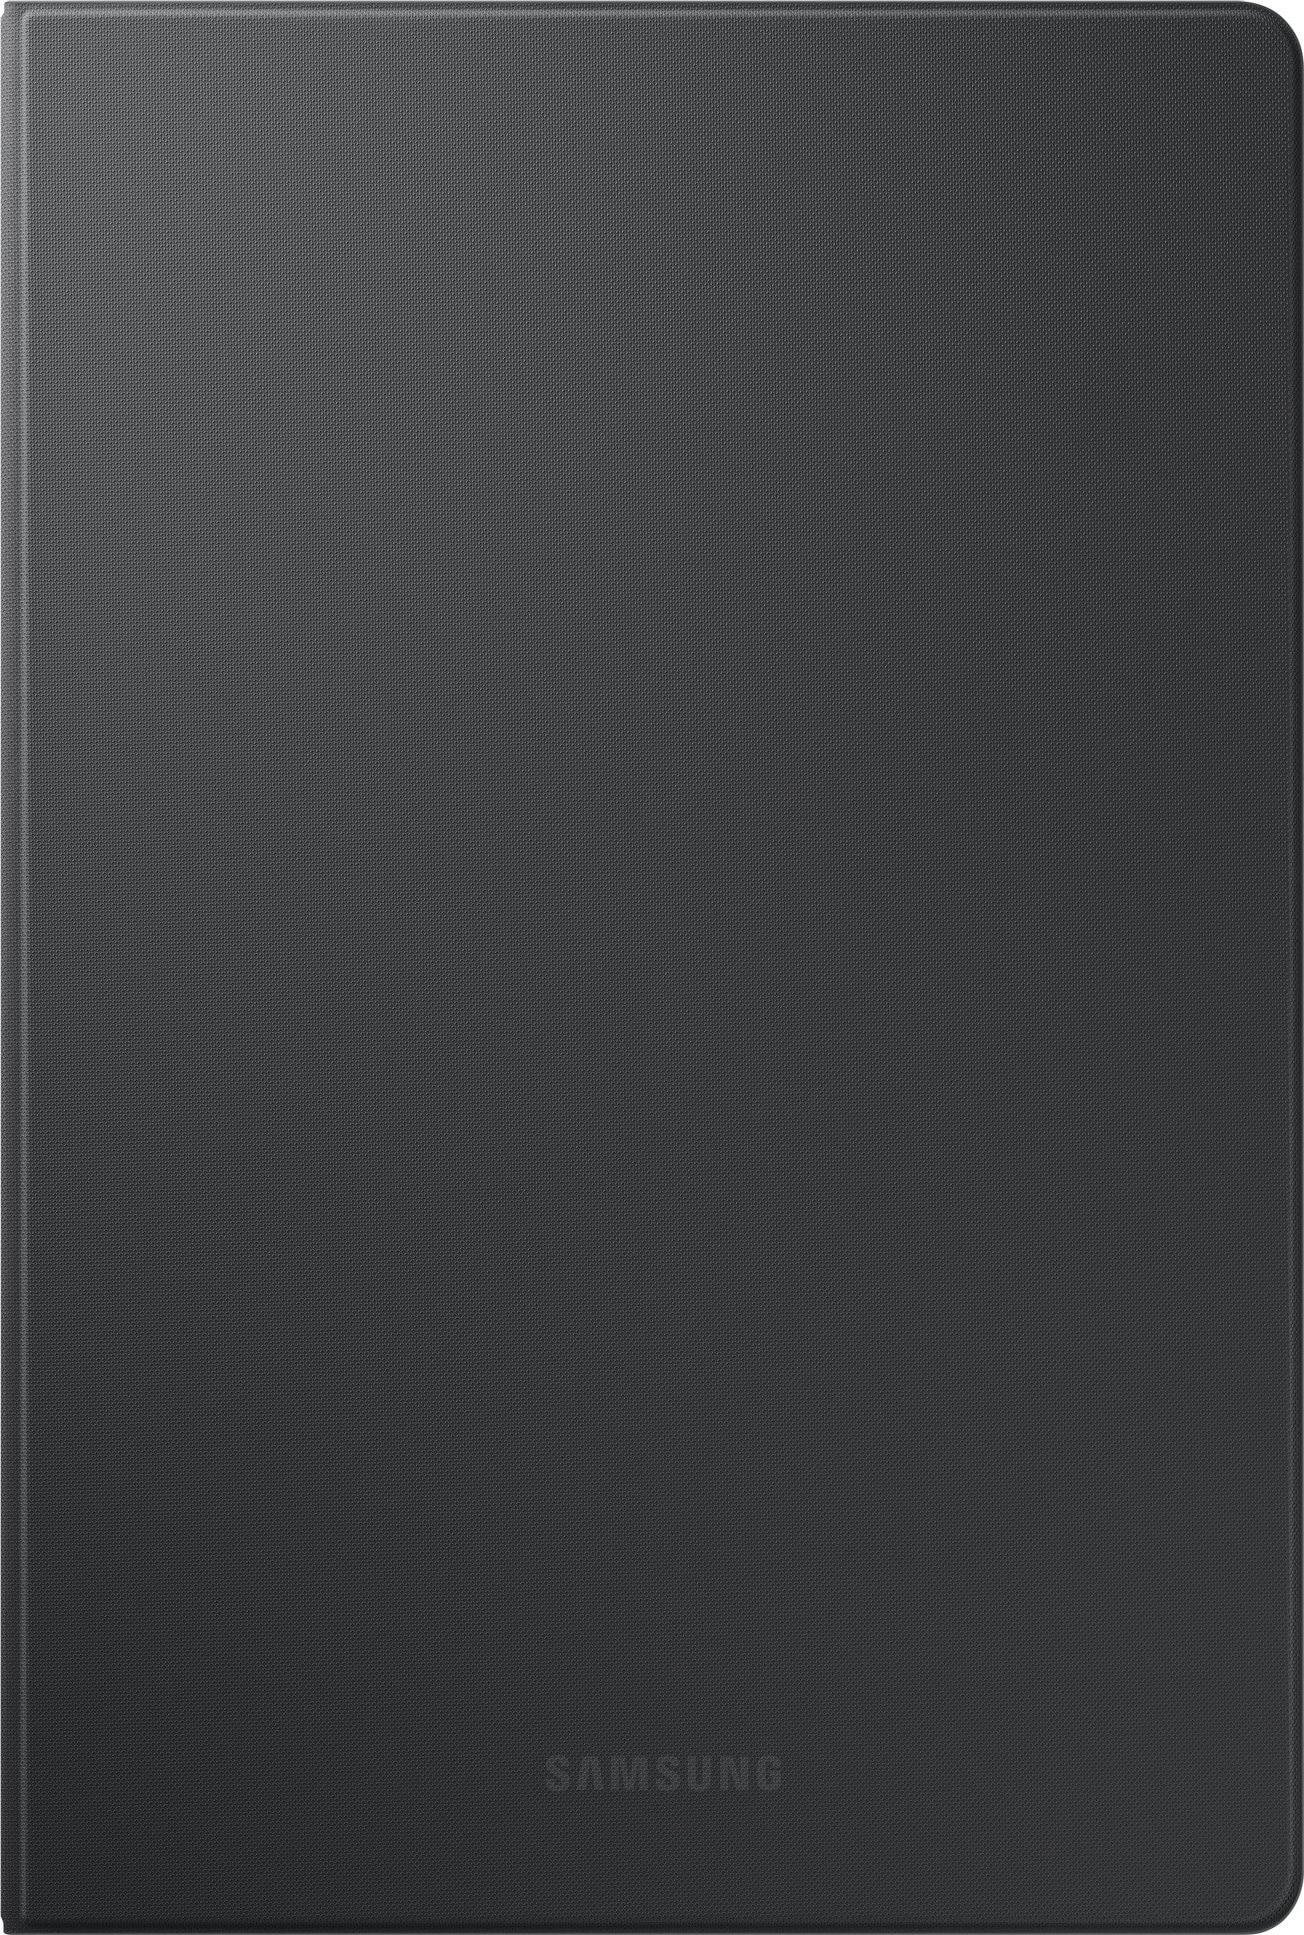 Samsung Galaxy Tab S6 Lite etui (oxford grey) - Tilbehør iPad og nettbrett  - Elkjøp